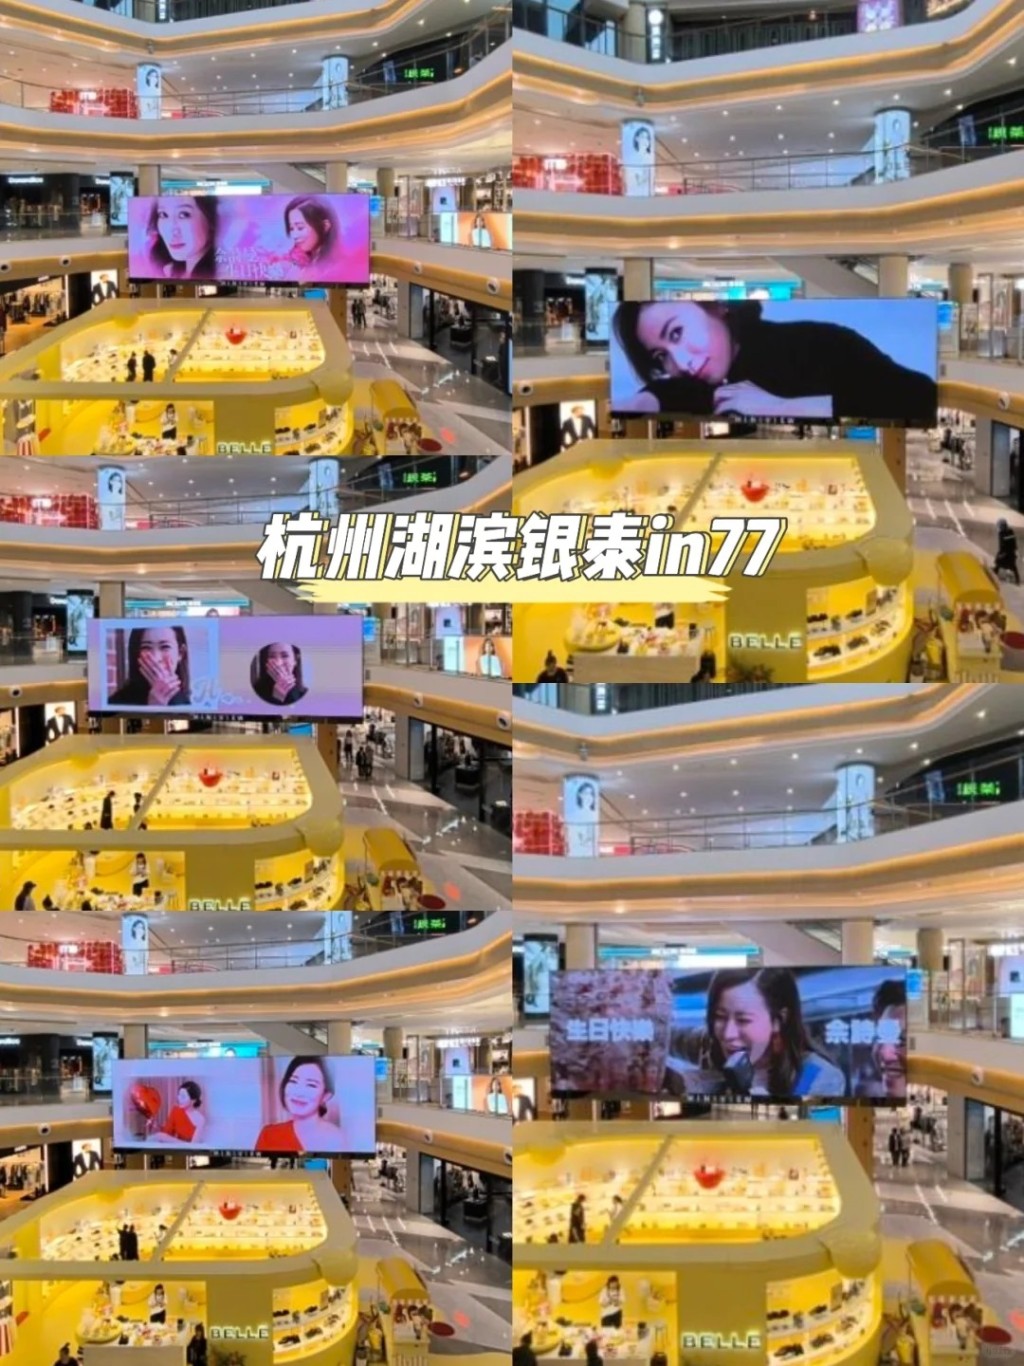 除了香港外，內地城市北京、成都、杭州及深圳等地大型商場的電子屏幕都有慶生廣告。